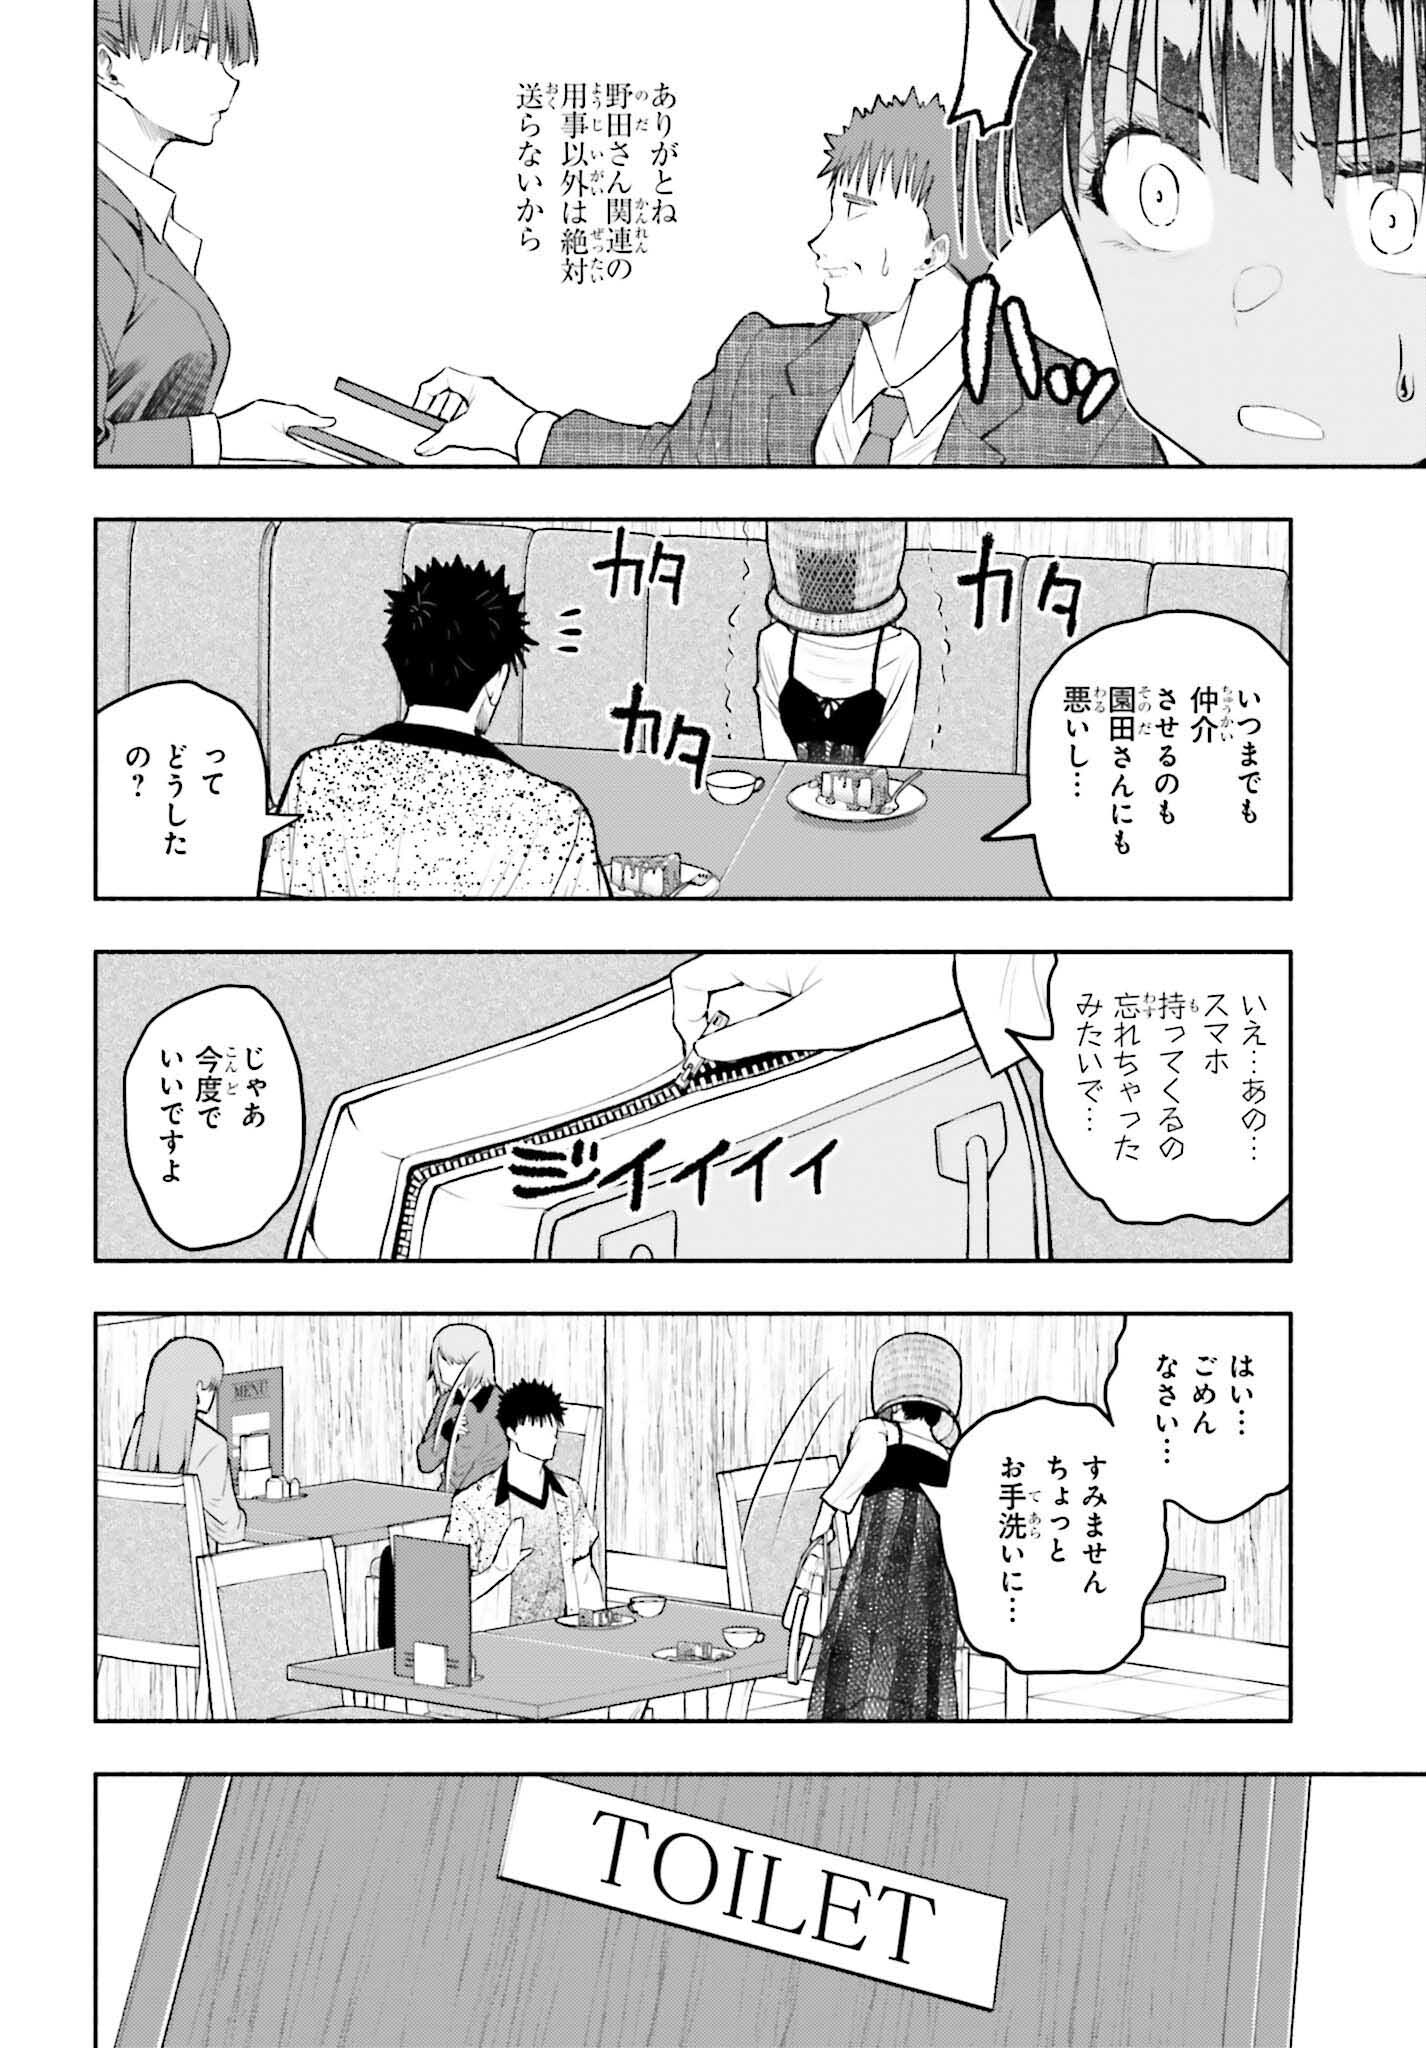 Omiai ni Sugoi Komyushou ga Kita - Chapter 14 - Page 2